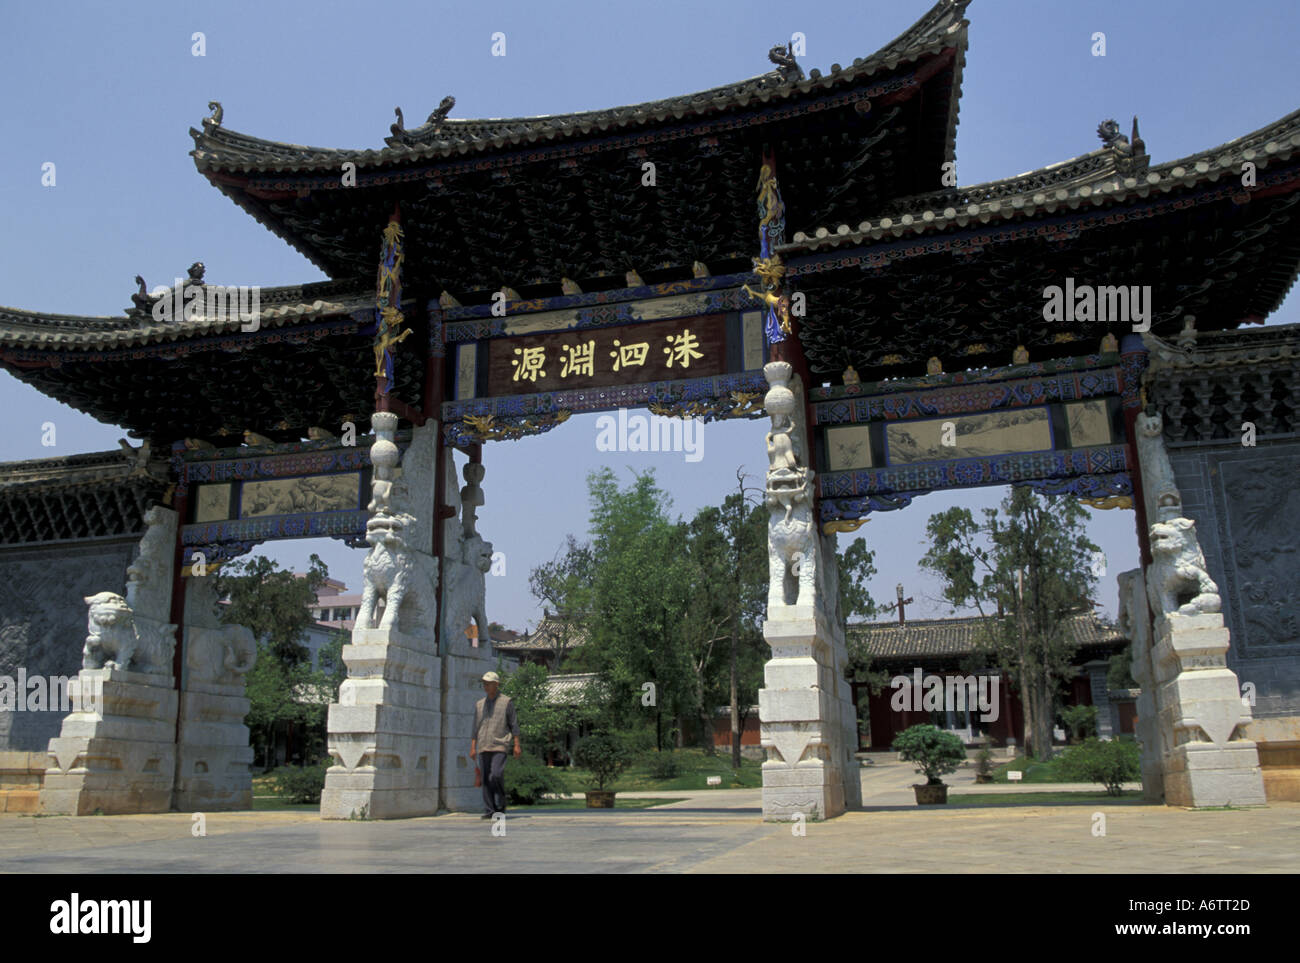 China, Yunnan Province, Jianshui city, Confucian Temple gate, est. 13th century Yuan Dynasty. Cunfucian school Stock Photo